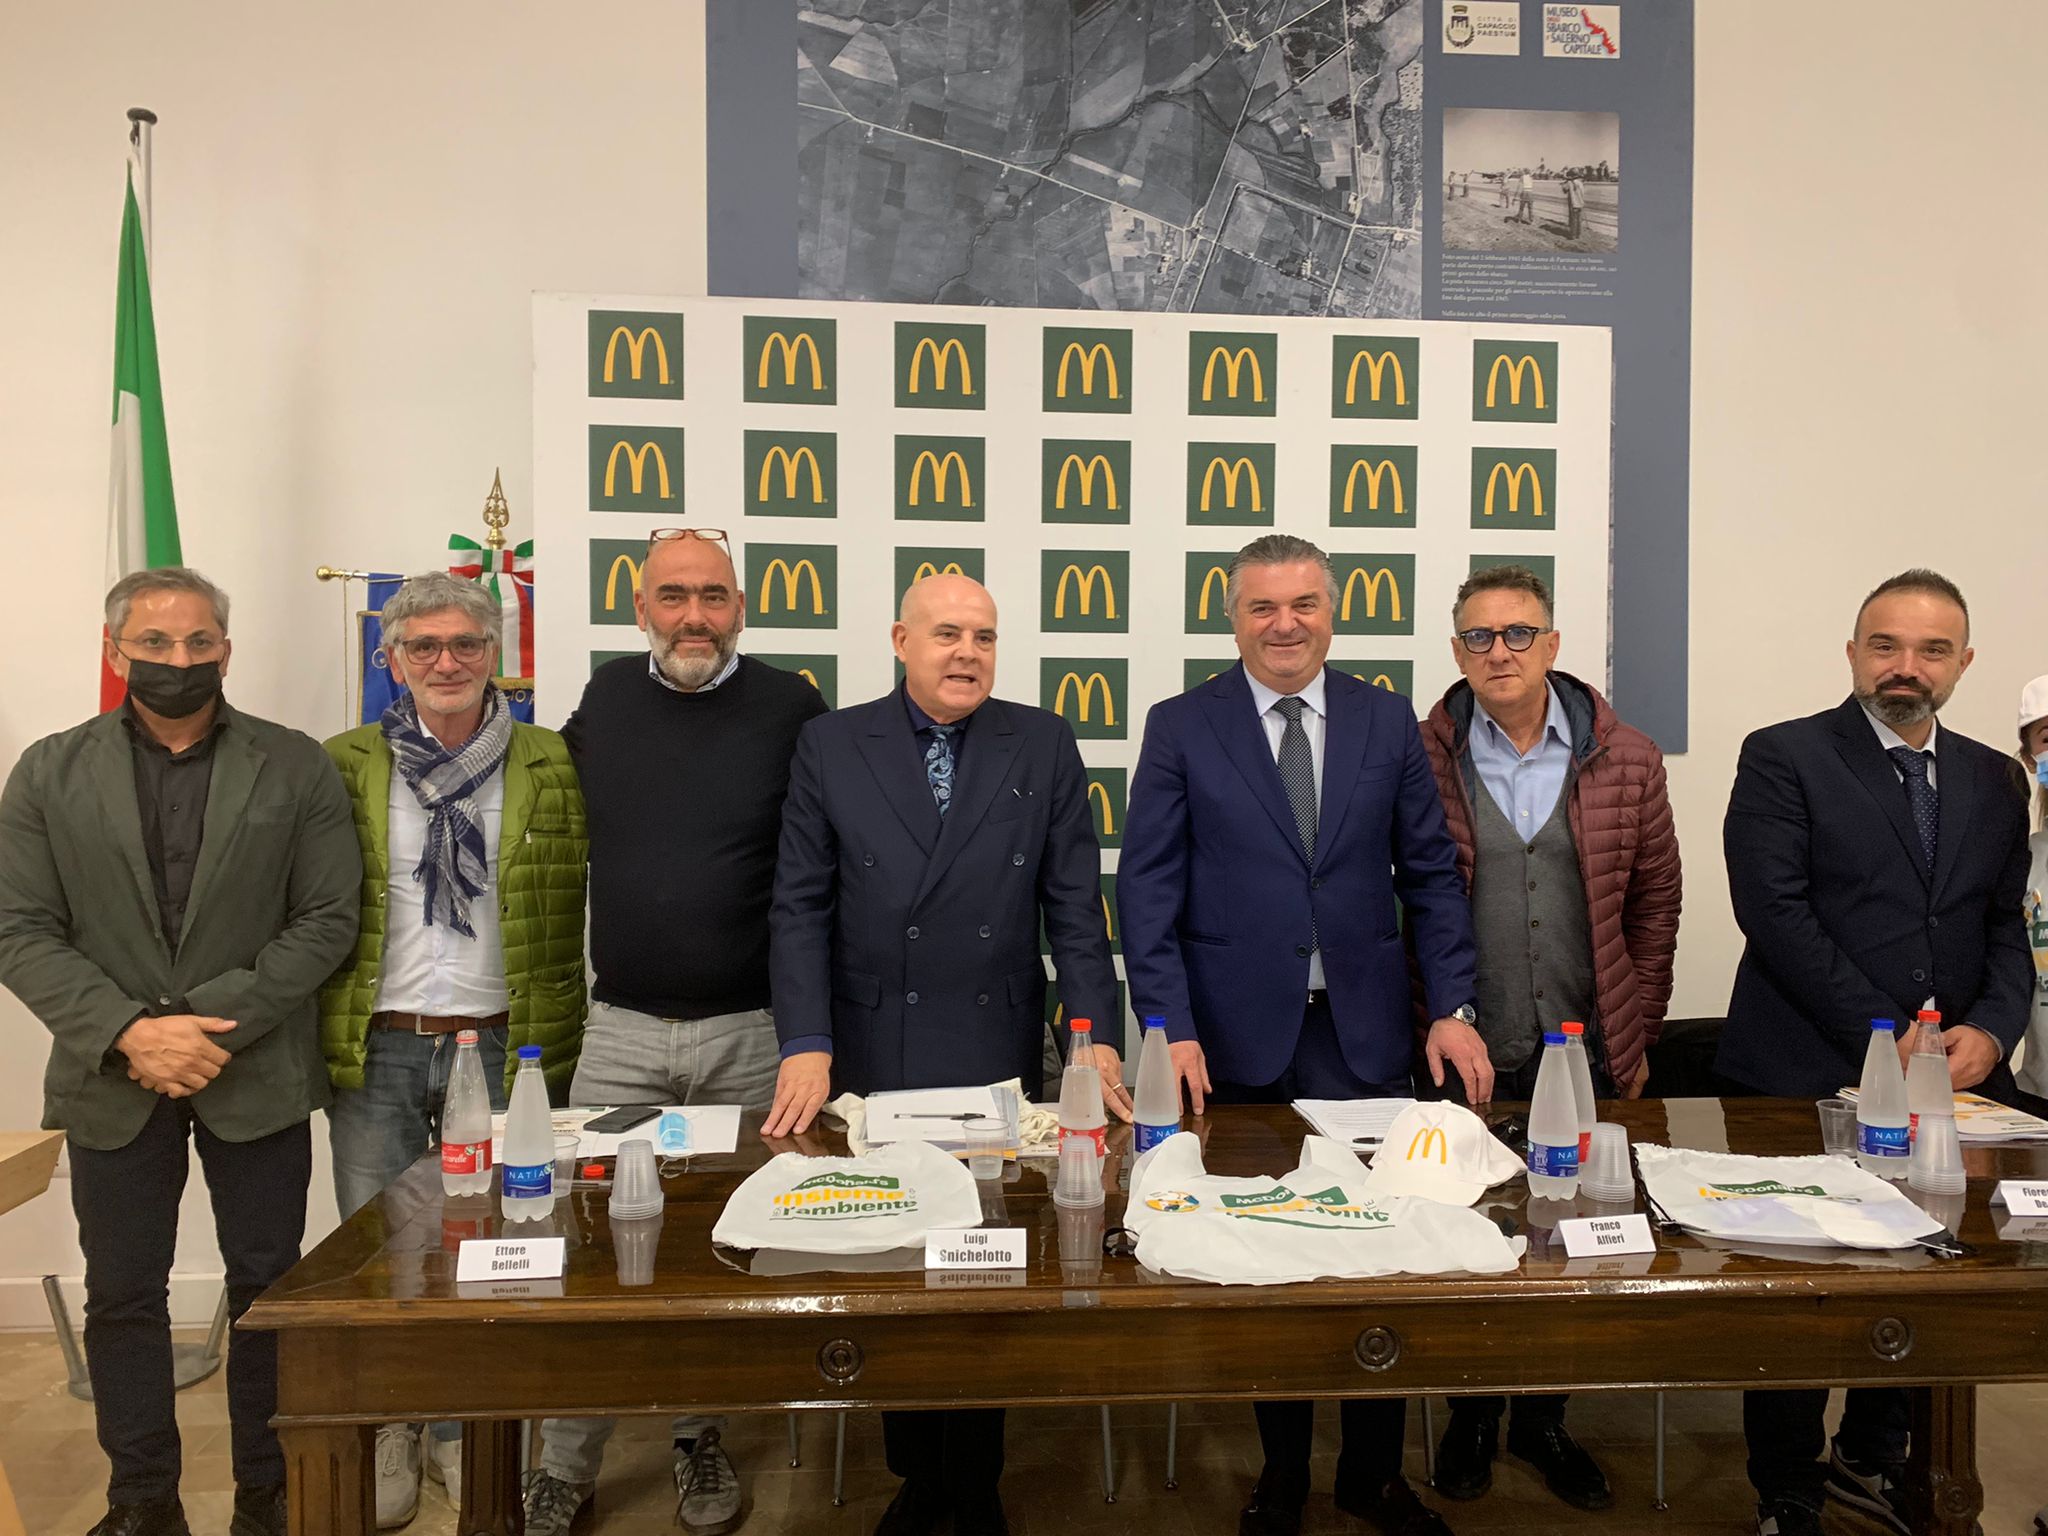 McDonald’s Salerno e Comune di Capaccio Paestum insieme per contribuire a “creare bellezza”